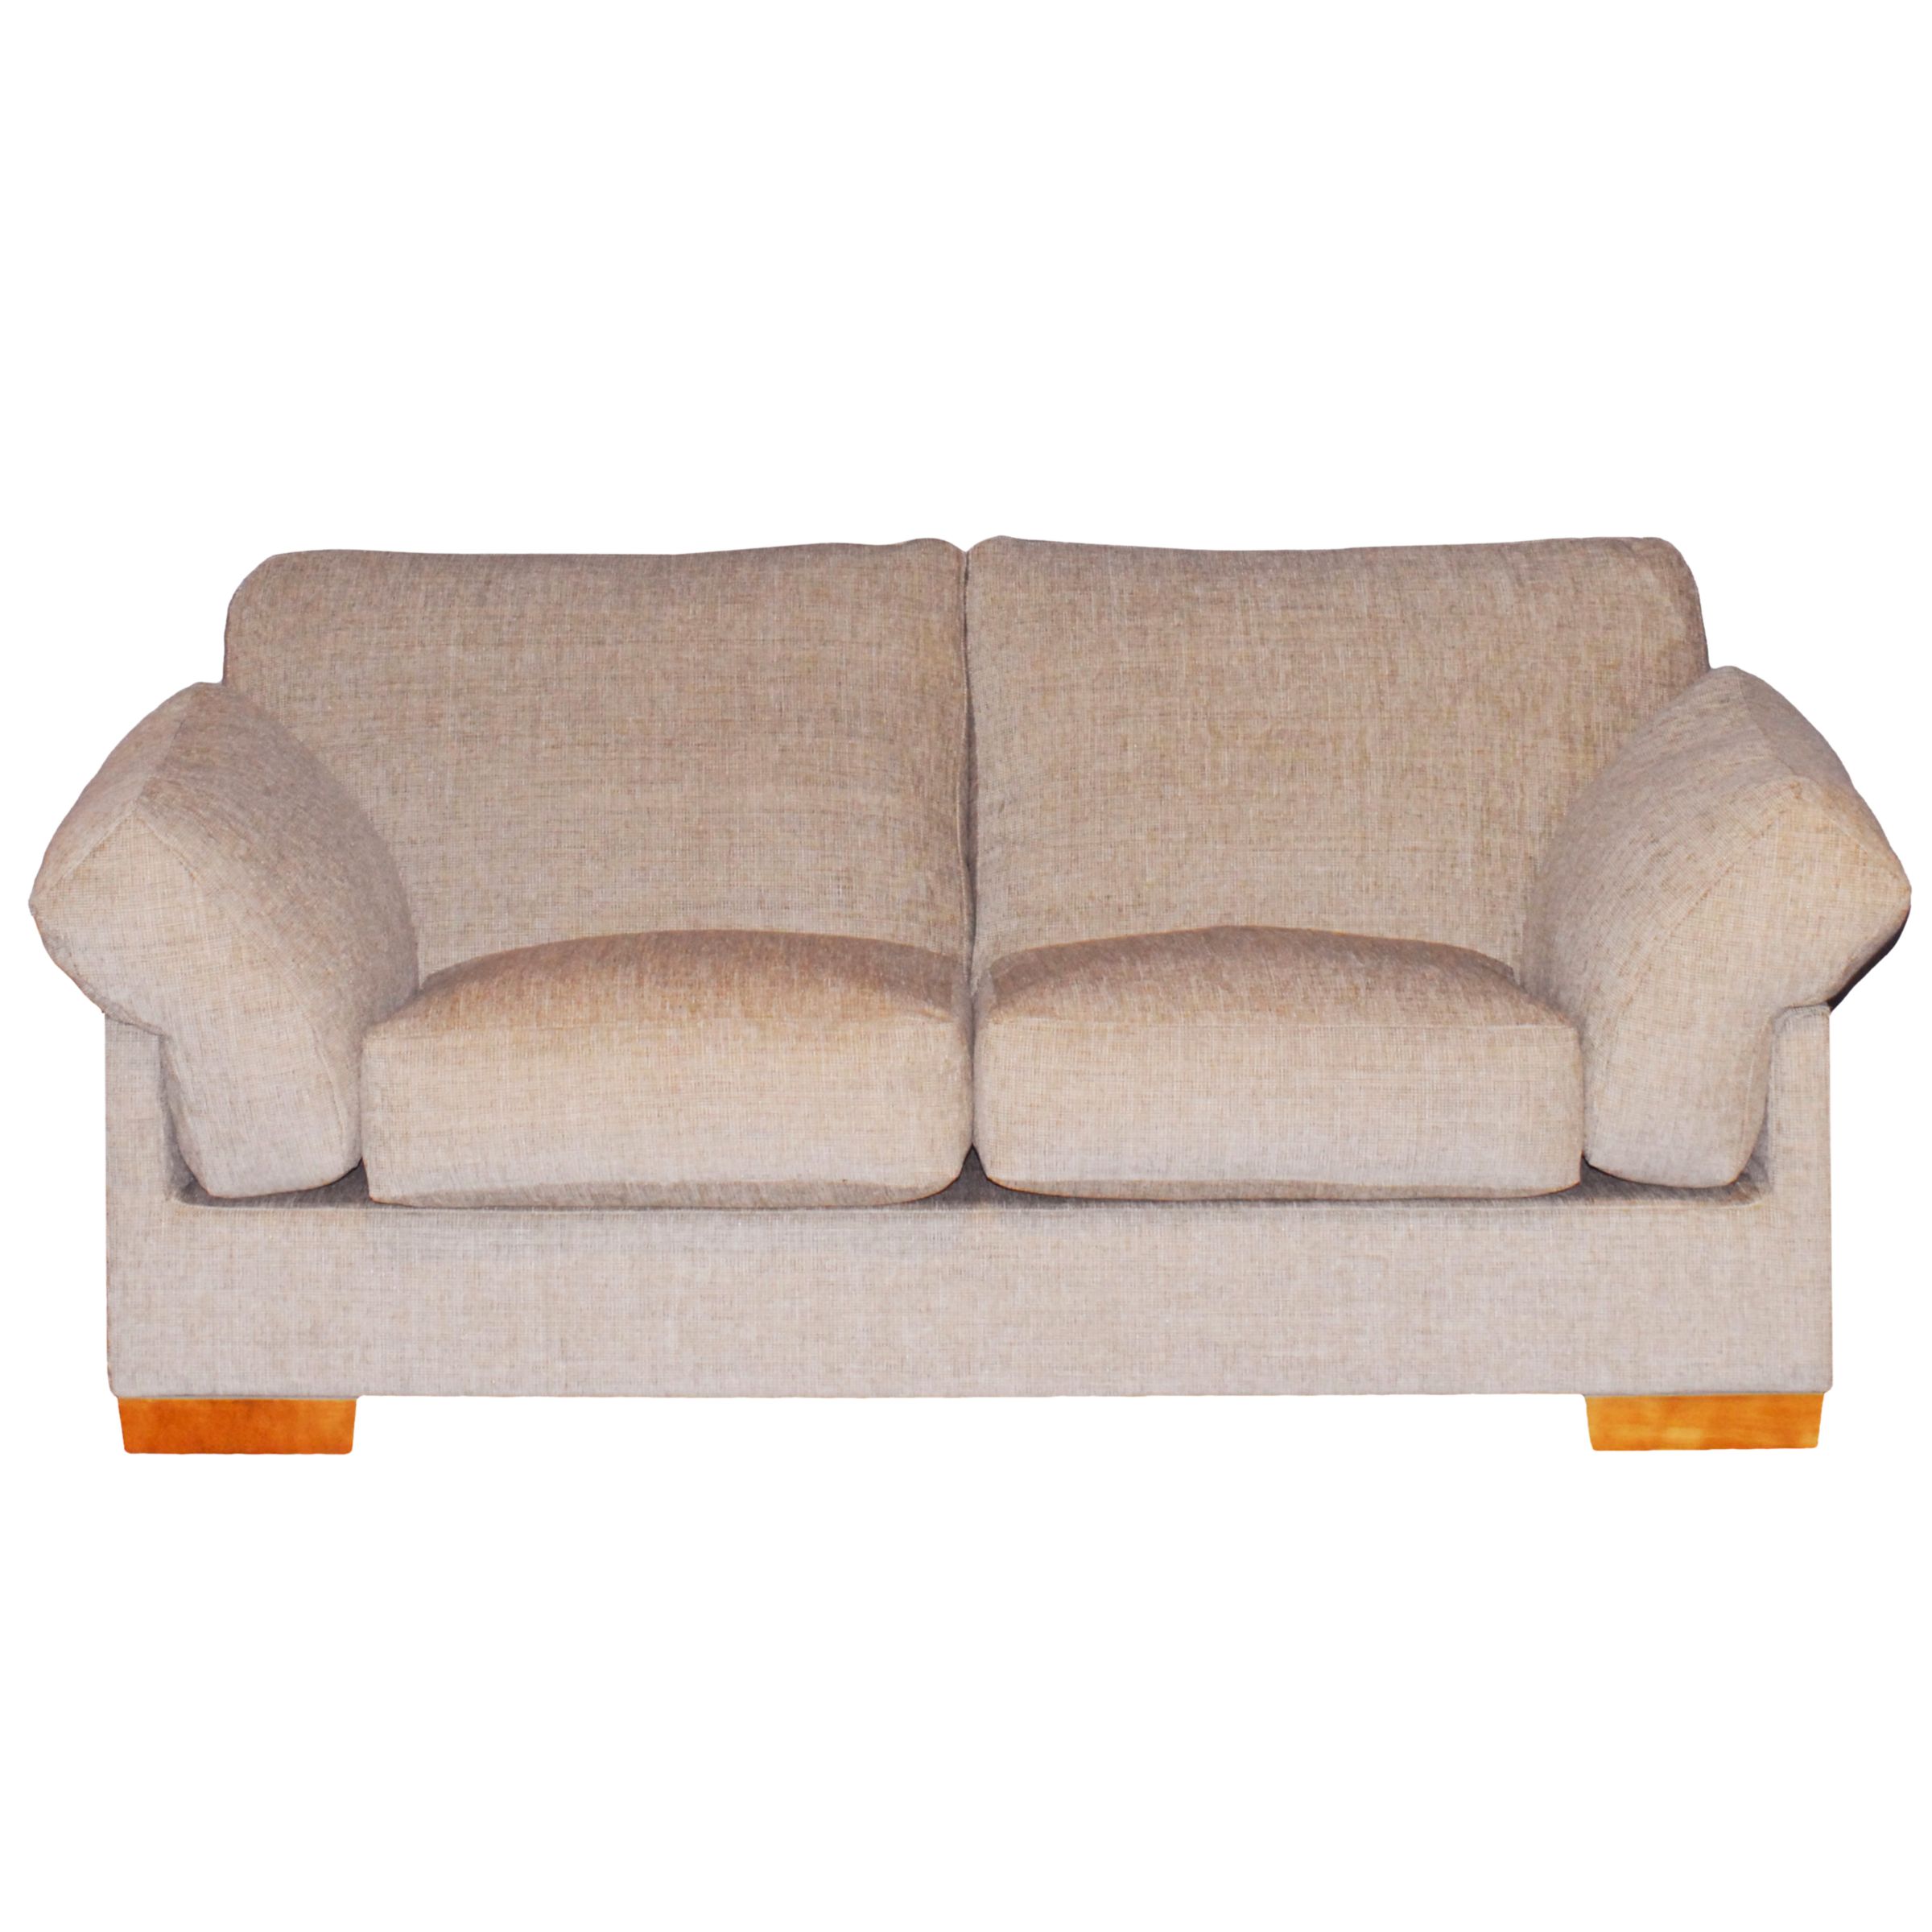 John Lewis Calanda Medium Sofa, Hessian, width 185cm